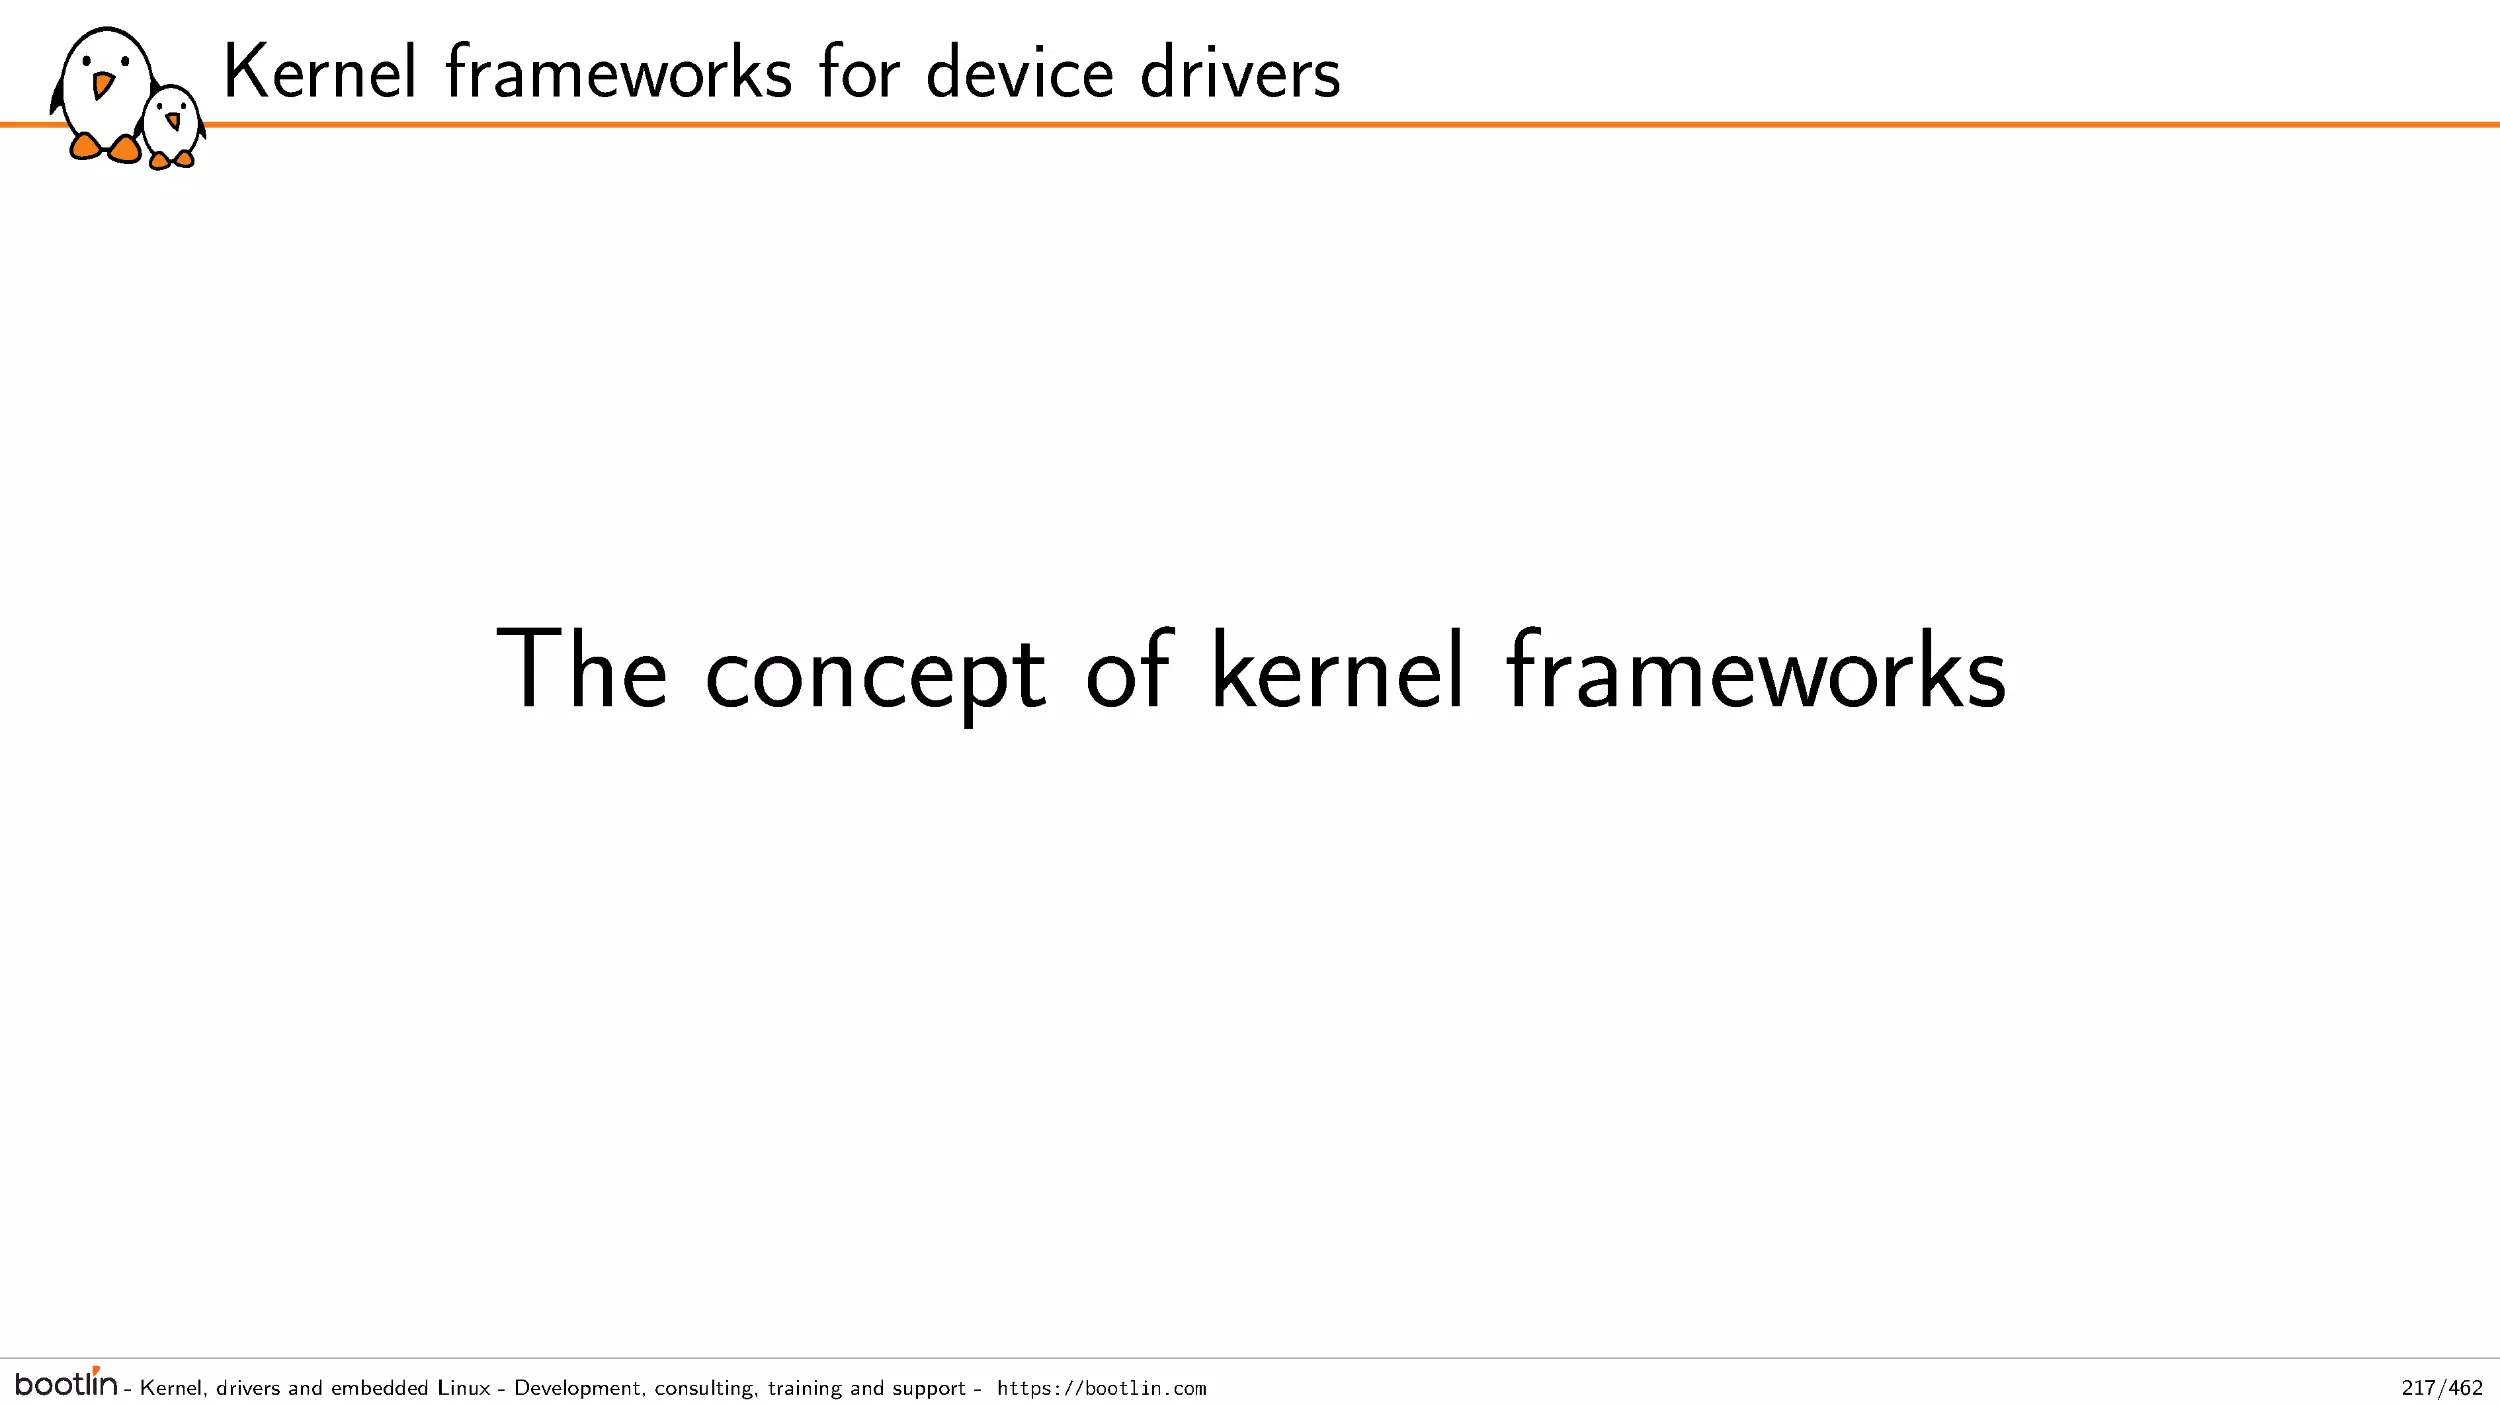 The concept of kernel frameworks